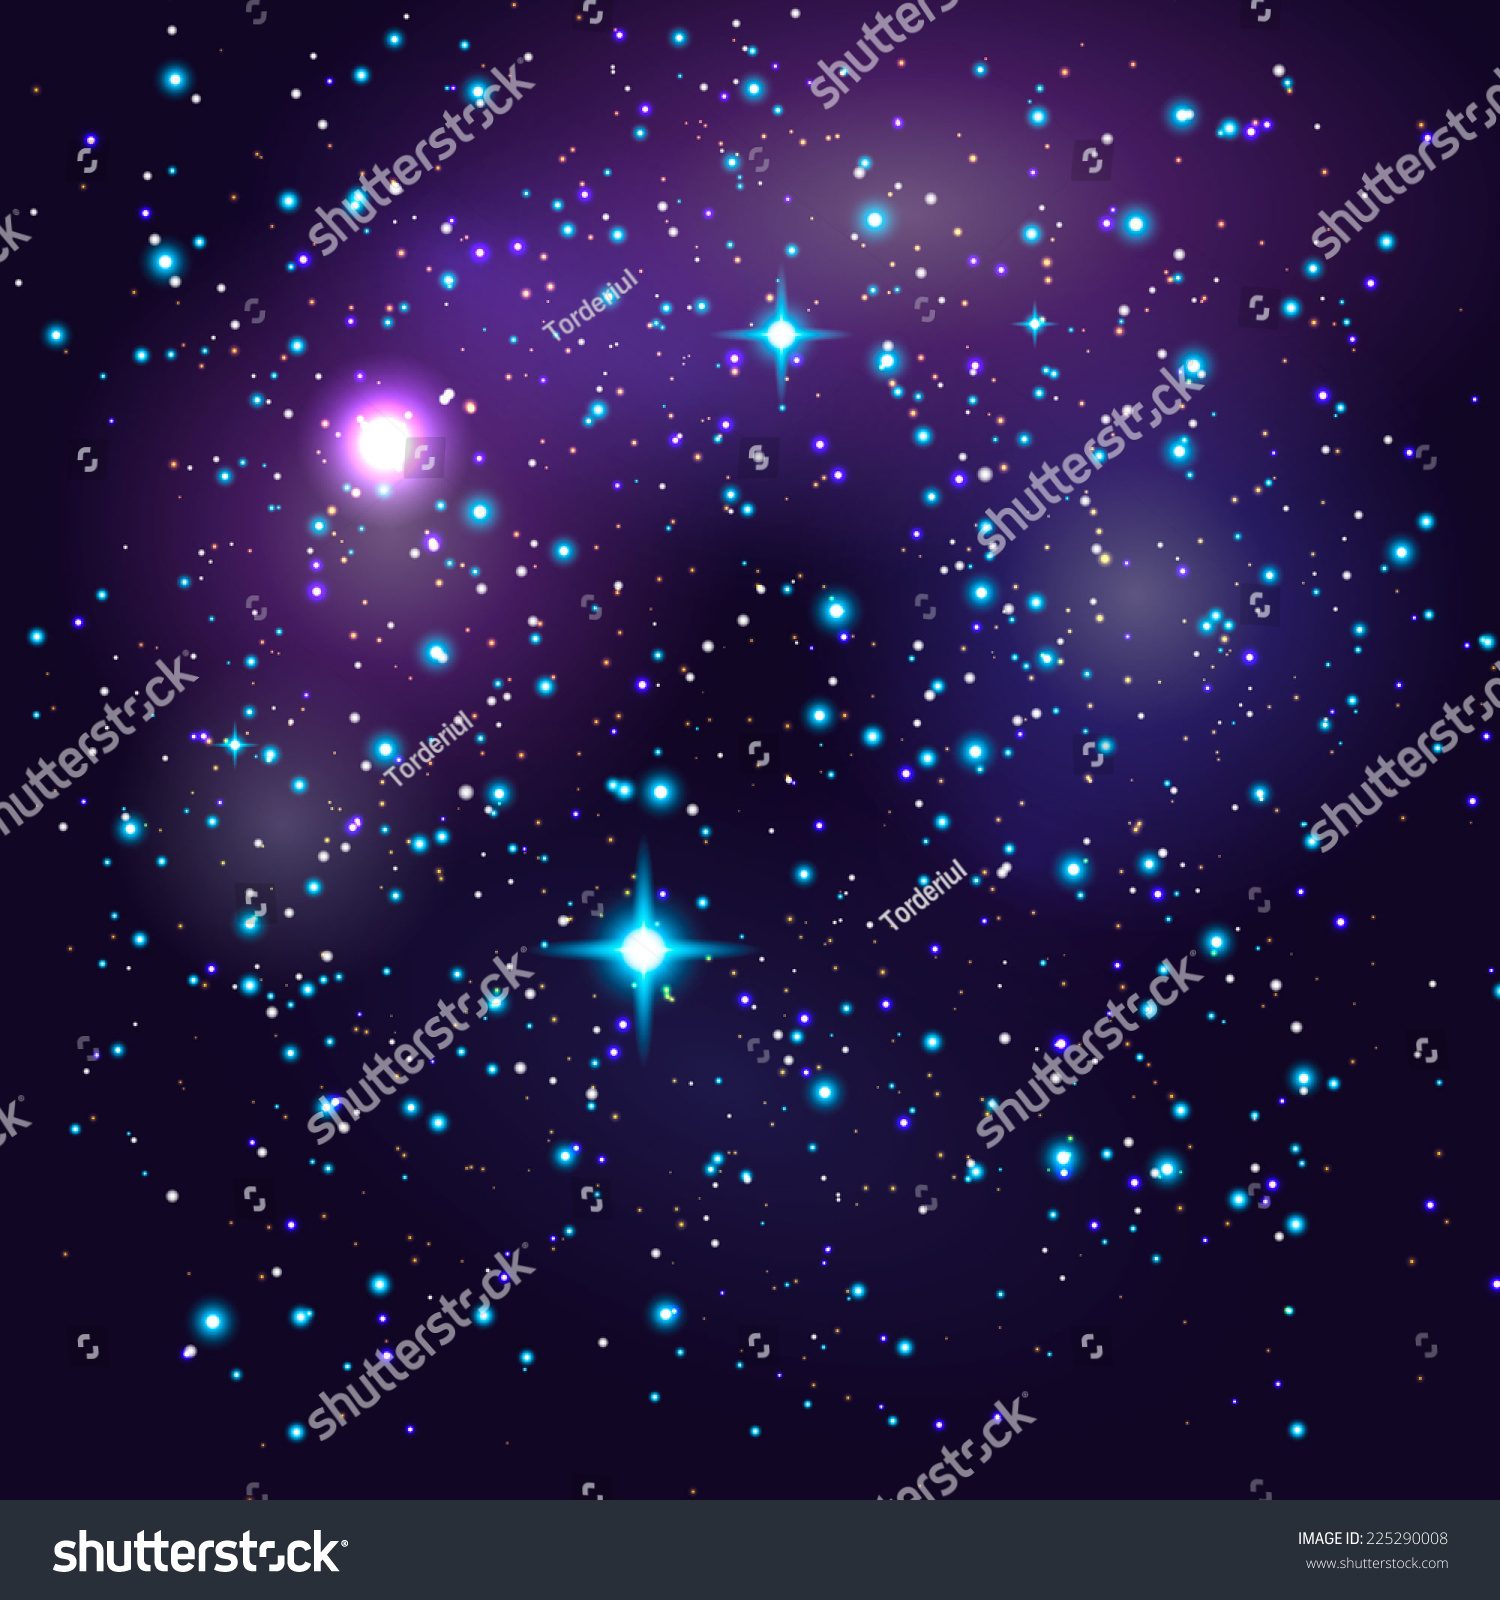 Galaxy Stars Clip Art